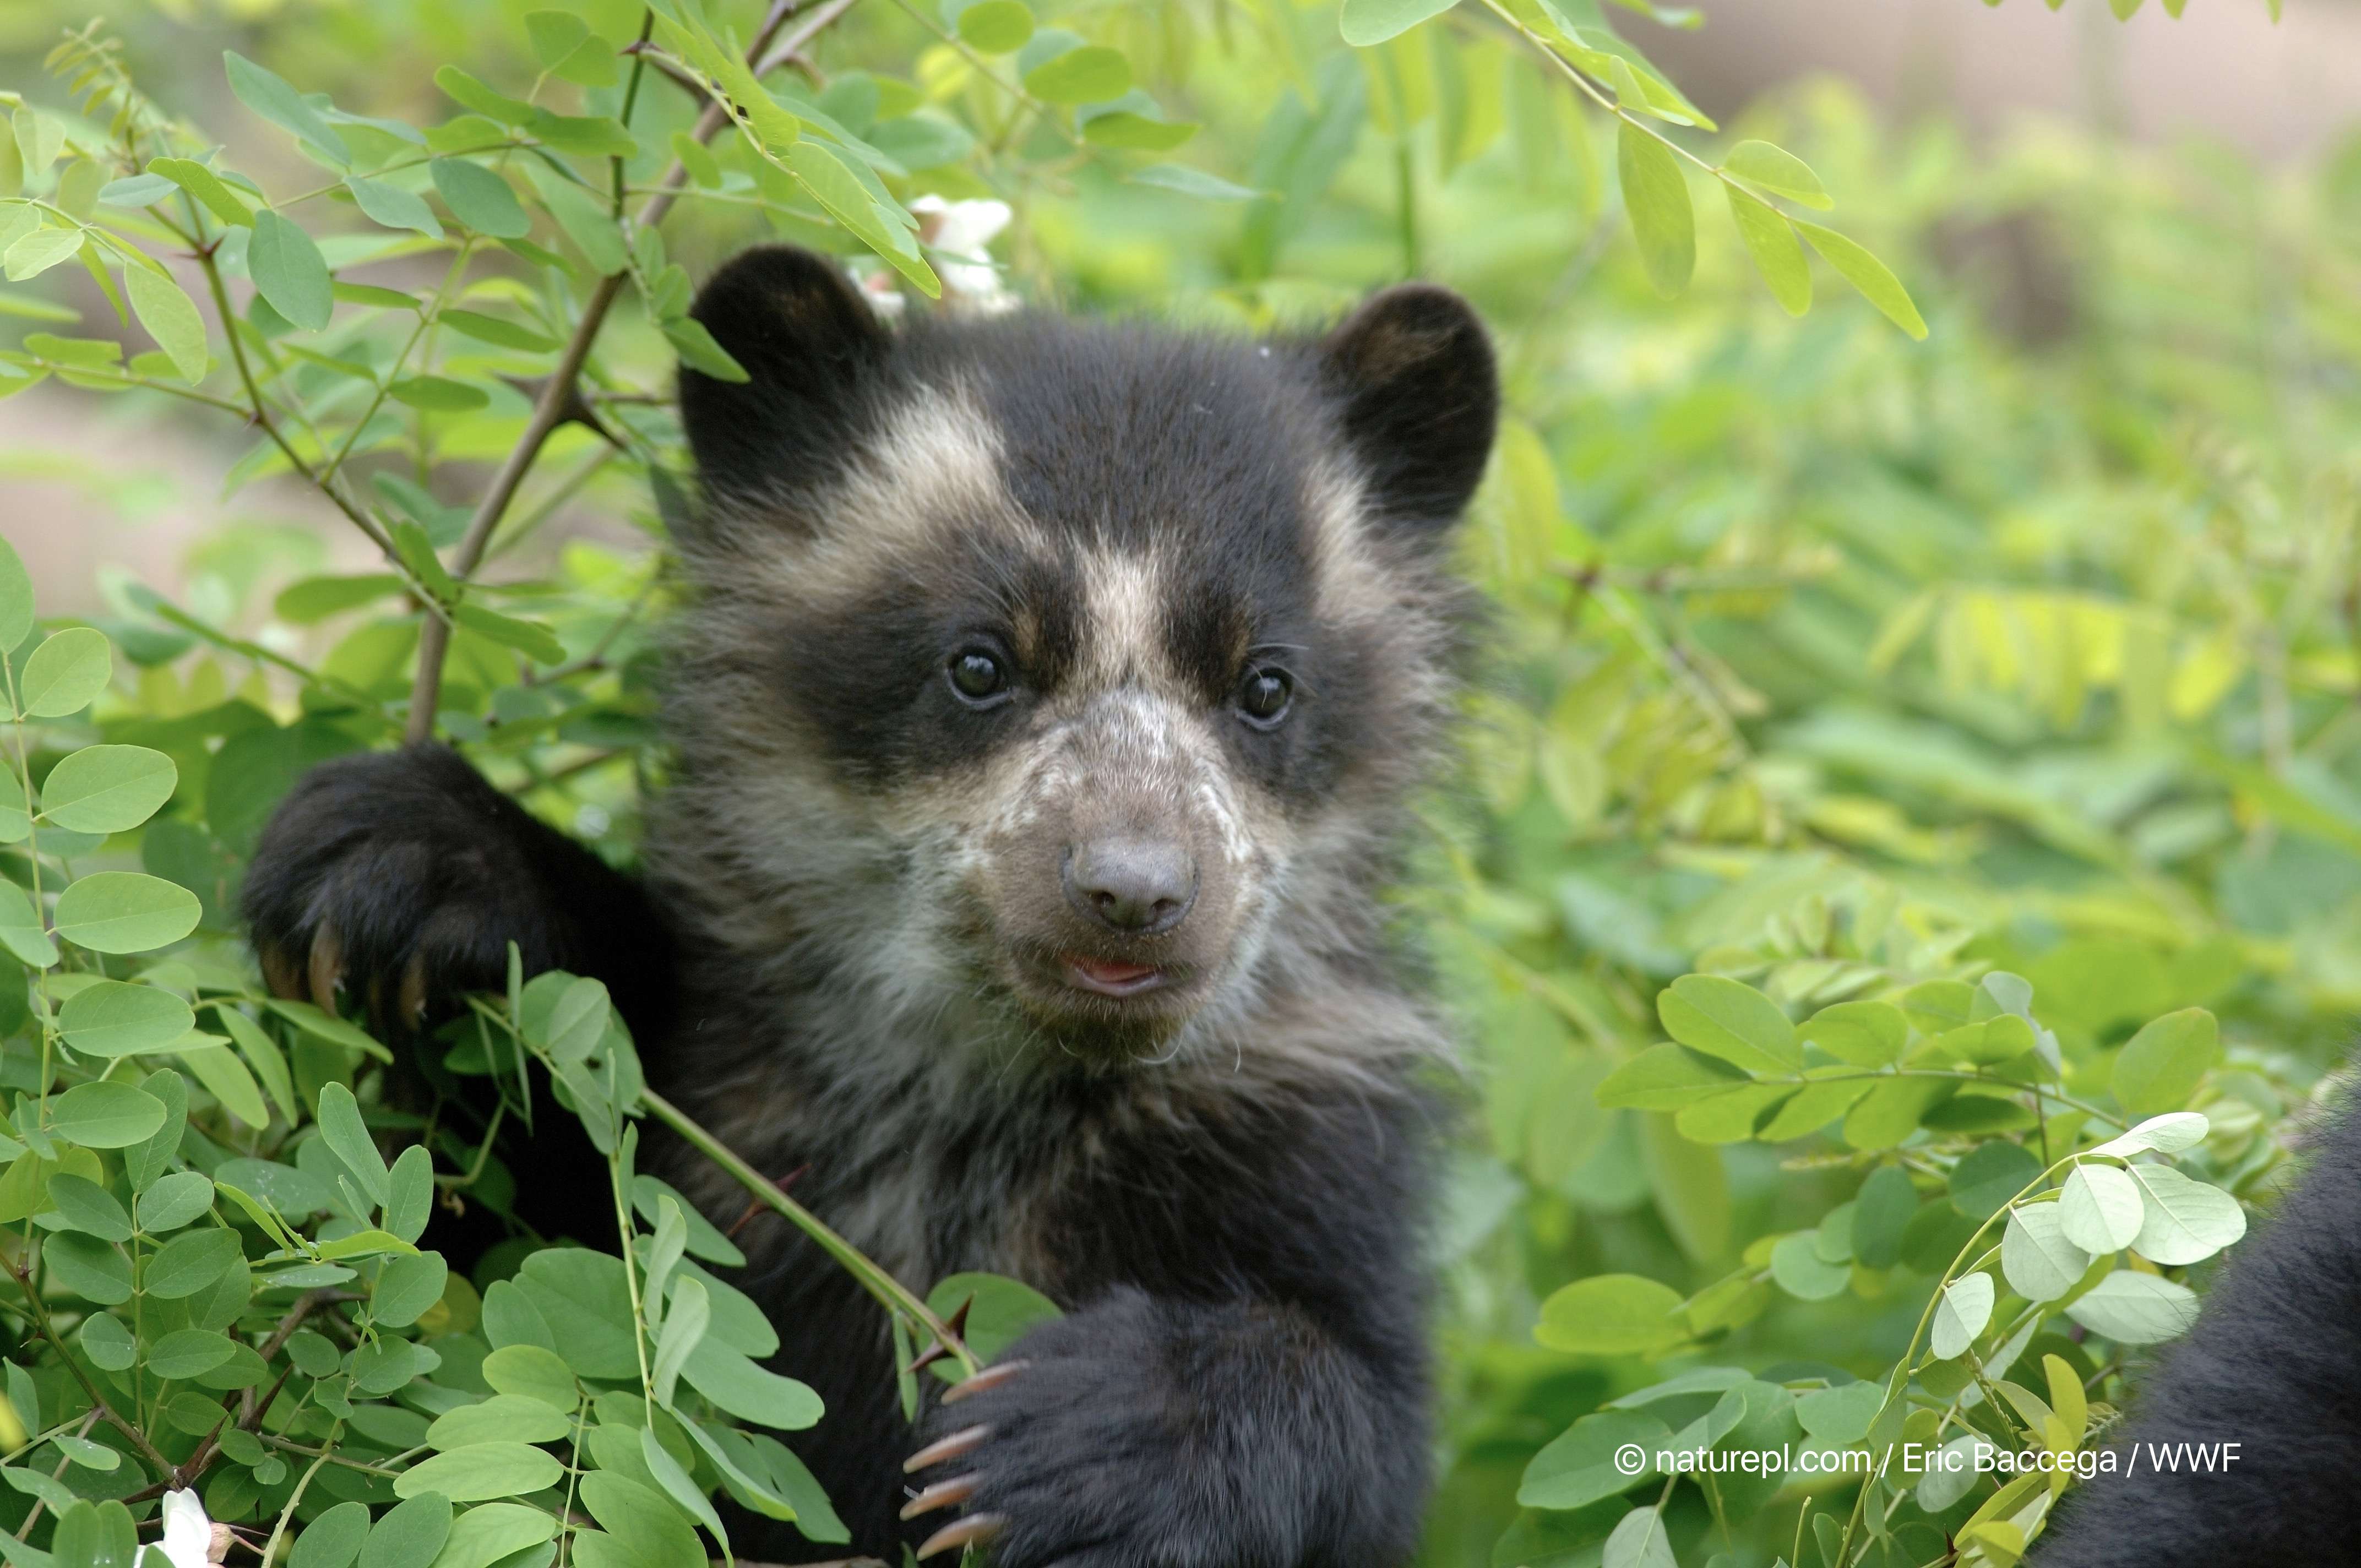 wwf世界自然基金会 的想法: 熊猫君分享一只憨憨又可爱的眼镜熊幼崽